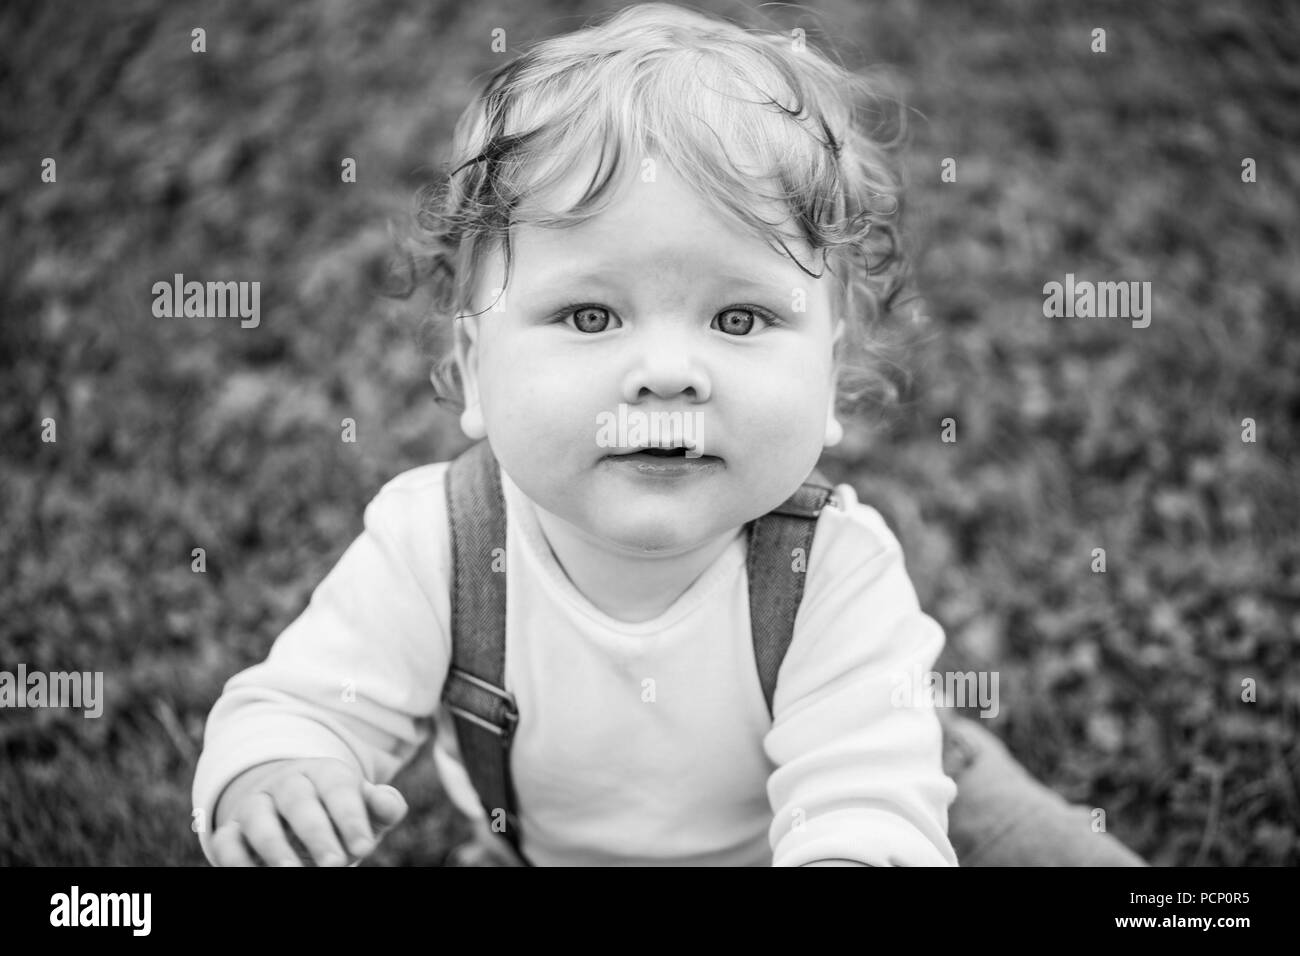 Bambino, ragazzo curioso cercando nella fotocamera, close-up, b/w Foto Stock